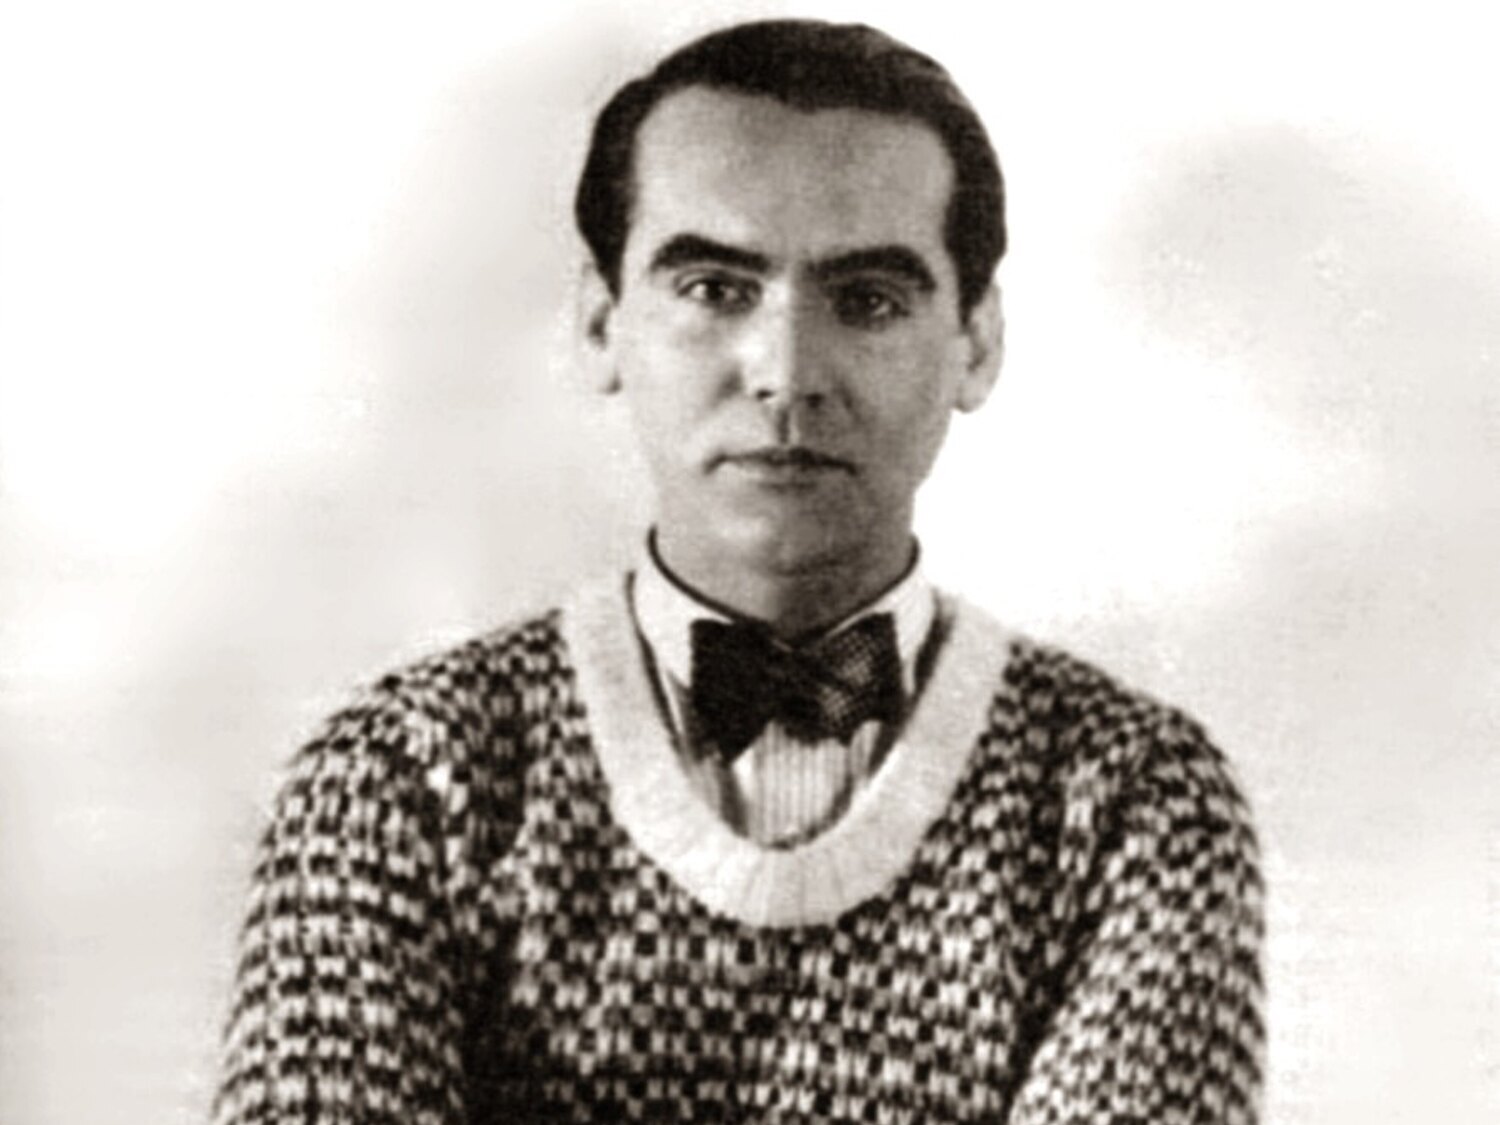 El Tribunal Constitucional rechaza investigar el asesinato de Federico Garcia Lorca